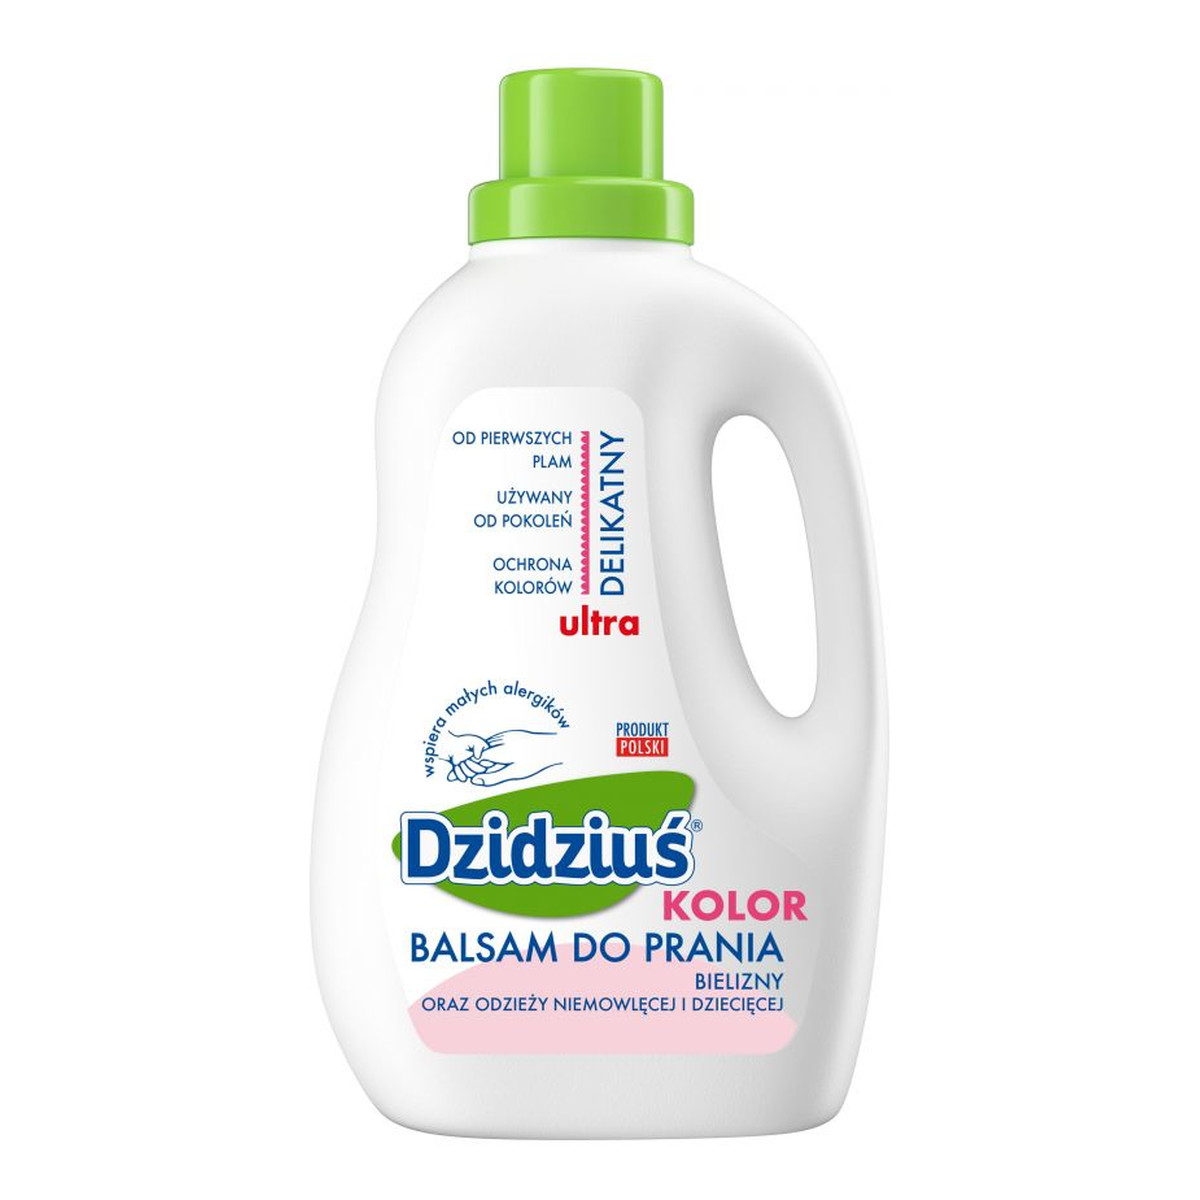 Dzidziuś Balsam do prania Kolor 1500ml